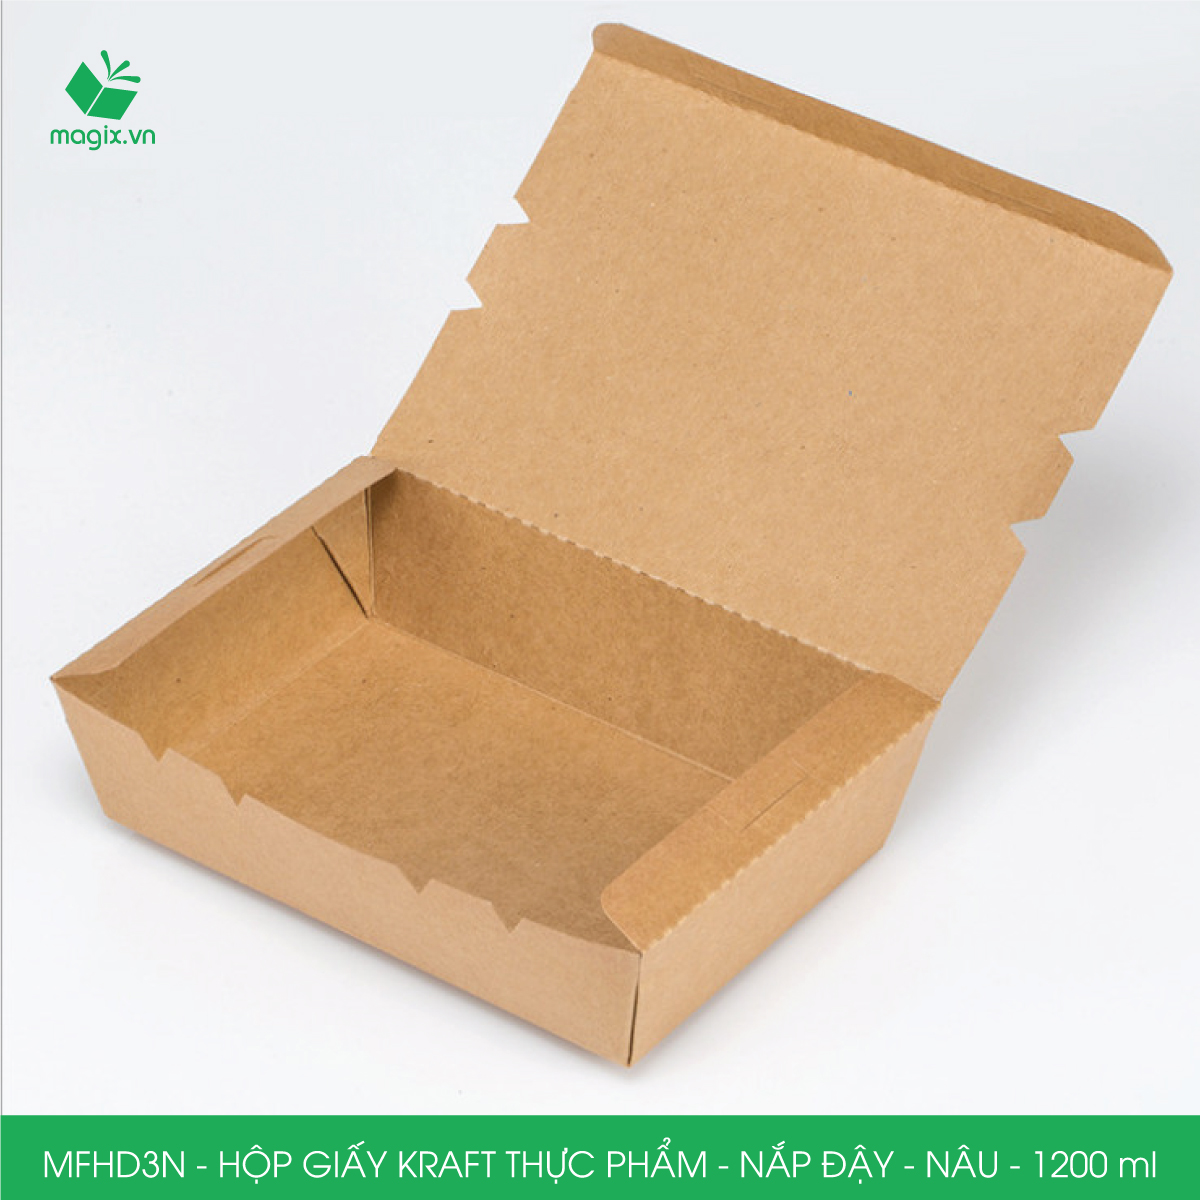 MFHD3N - Combo 25 hộp giấy kraft thực phẩm 1200ml, hộp đựng thức ăn nắp đậy màu nâu, hộp gói đồ ăn mang đi